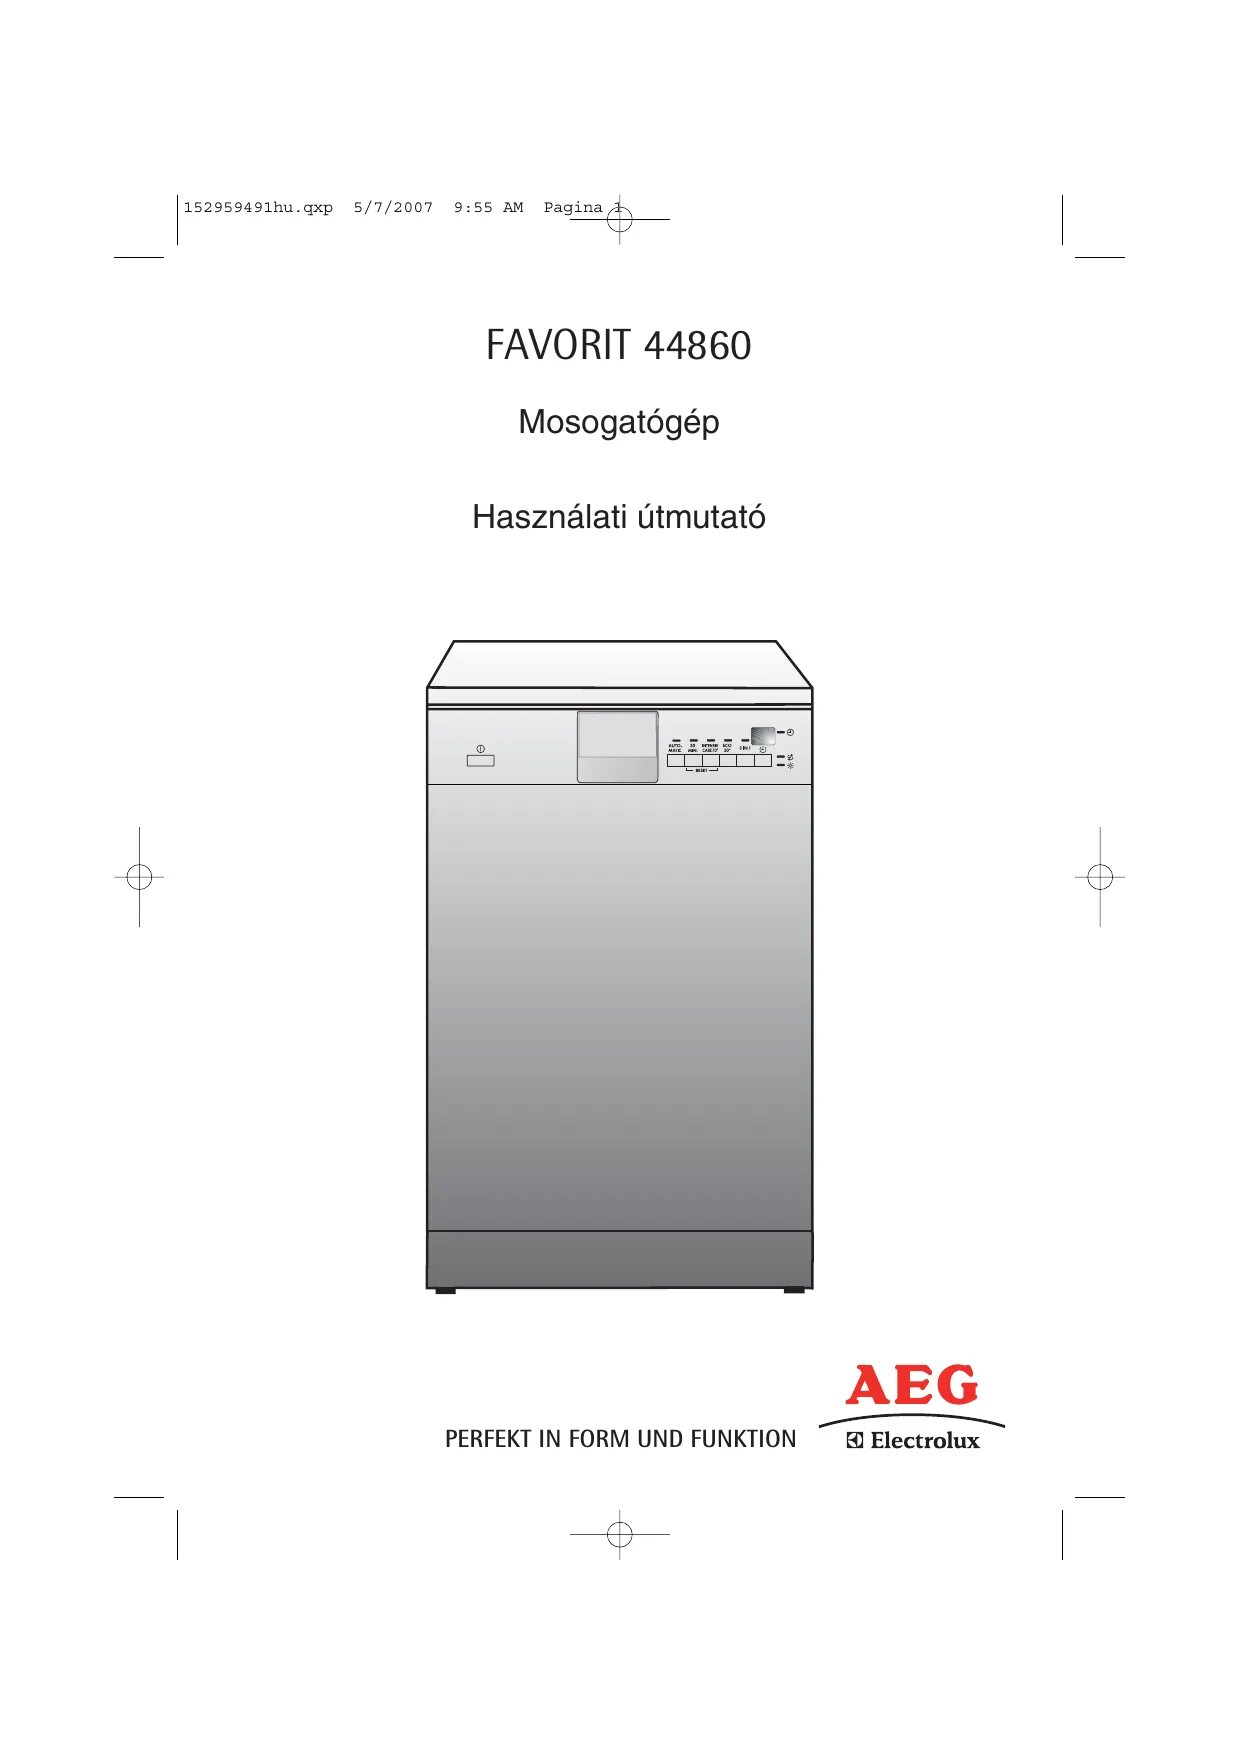 Инструкция посудомоечной машинки. Посудомойка AEG Favorit PROCLEAN. Посудомоечная машина аеgfavorit инструкция. AEG Electrolux Favorit посудомоечная машина инструкция. AEG Favorit посудомоечная машина инструкция.